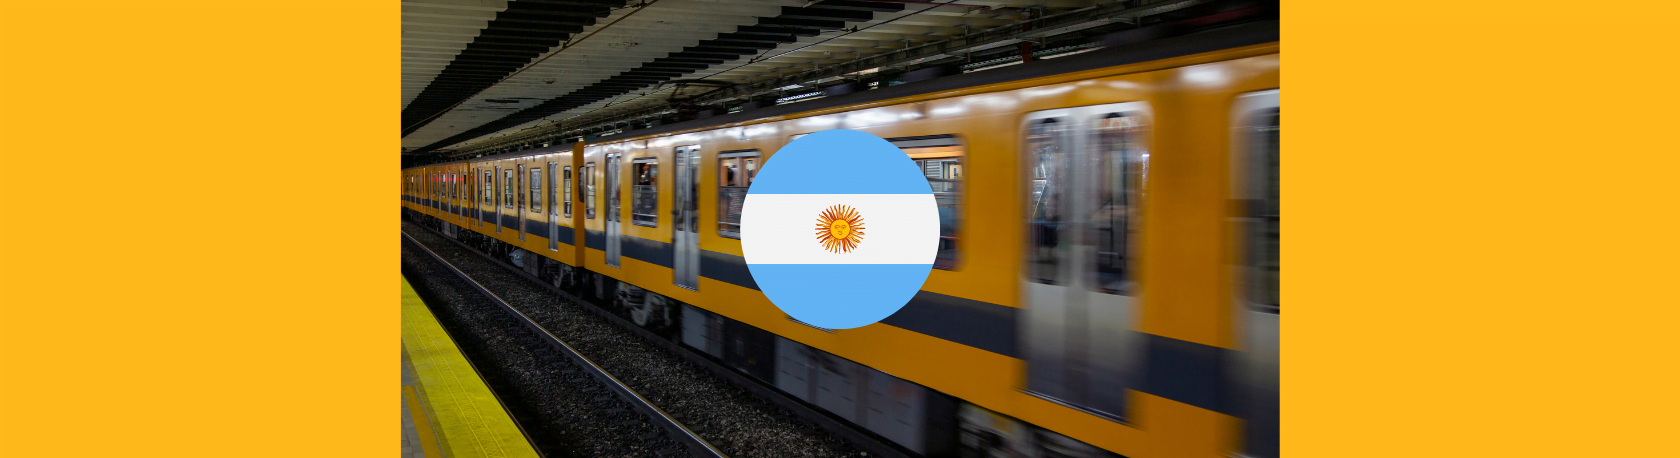 ¿Sabías que el subte de Buenos Aires es el más antiguo de América Latina? - Easy Español